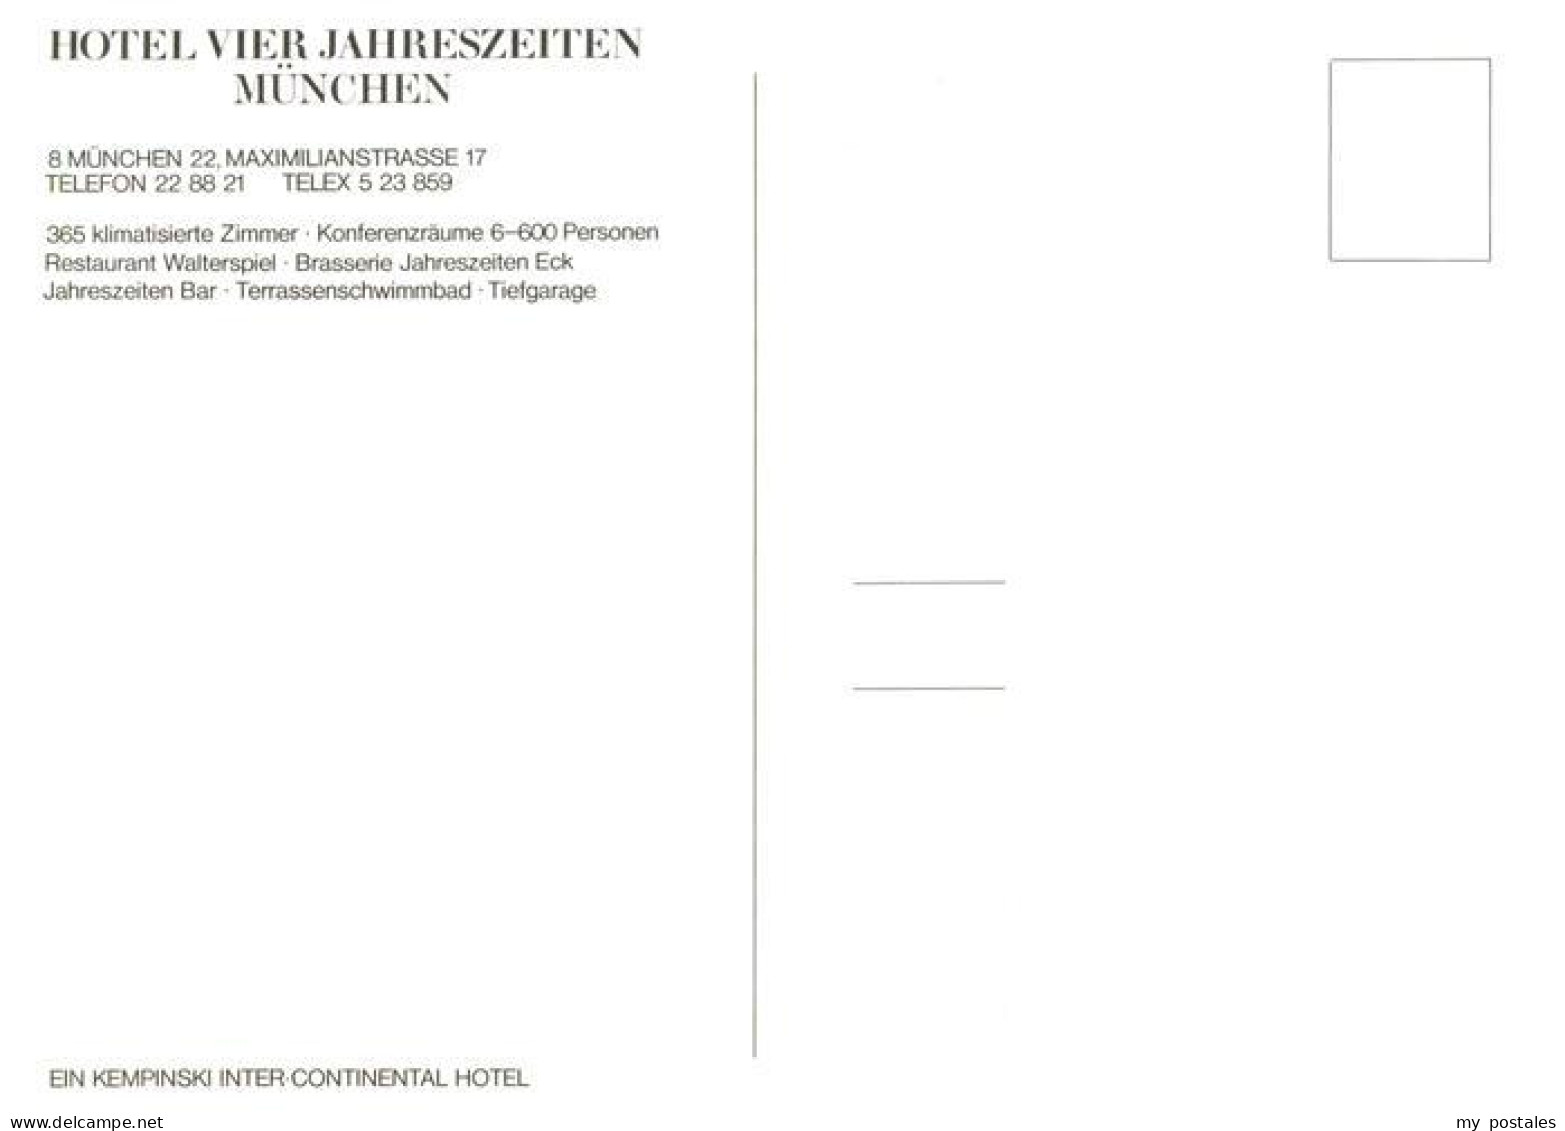 73885272 Muenchen Hotel Vier Jahreszeiten Restaurant Walterspiel Muenchen - Muenchen